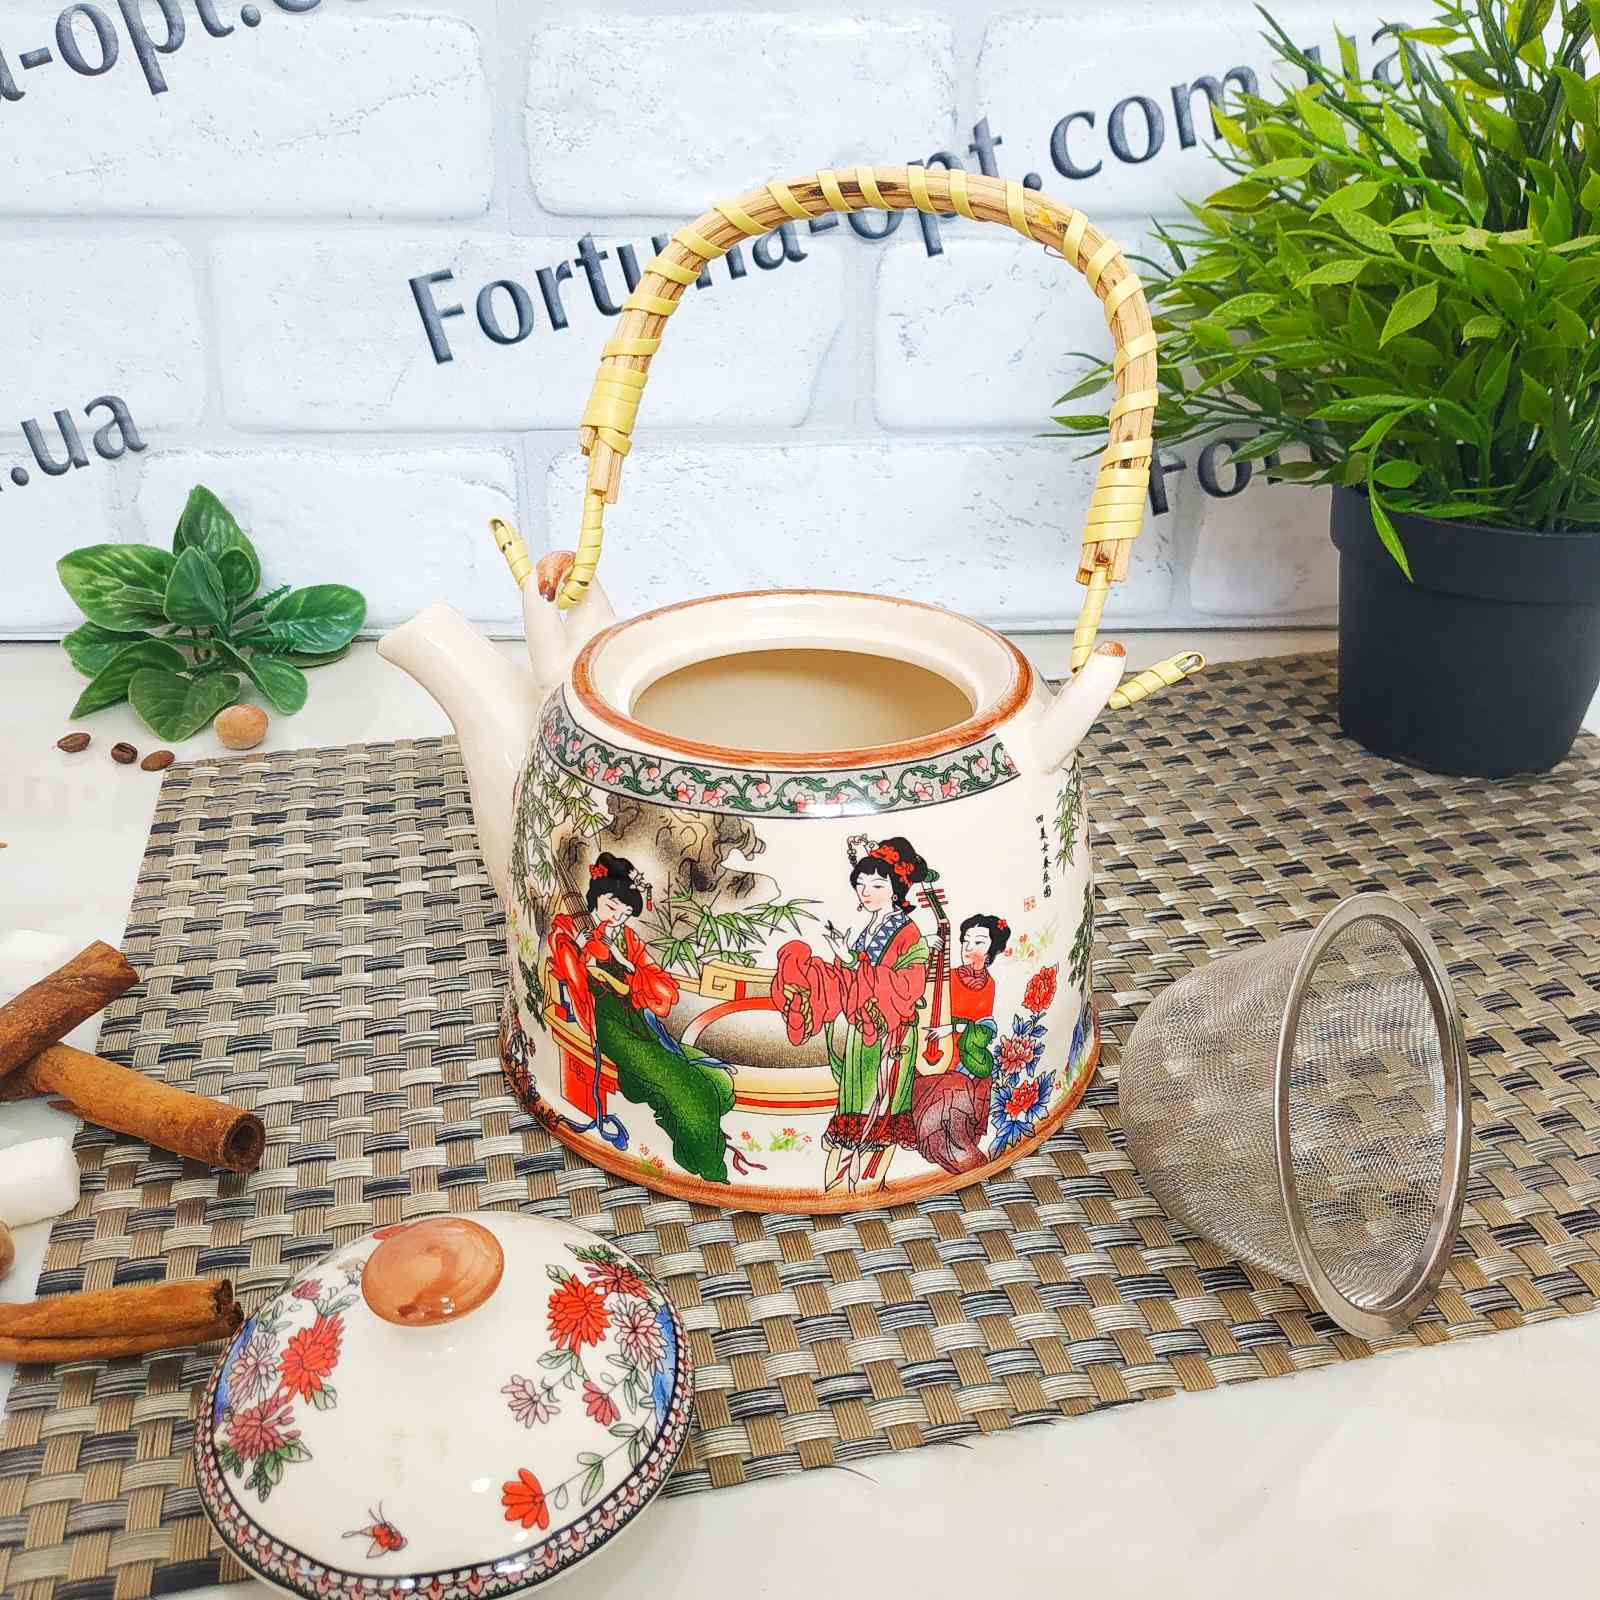 Заварочный чайник в китайском стиле (керамика) Edenberg EB - 3361 ✅ базовая цена $5.33 ✔ Опт ✔ Скидки ✔ Заходите! - Интернет-магазин ✅ ;Фортуна-опт ✅